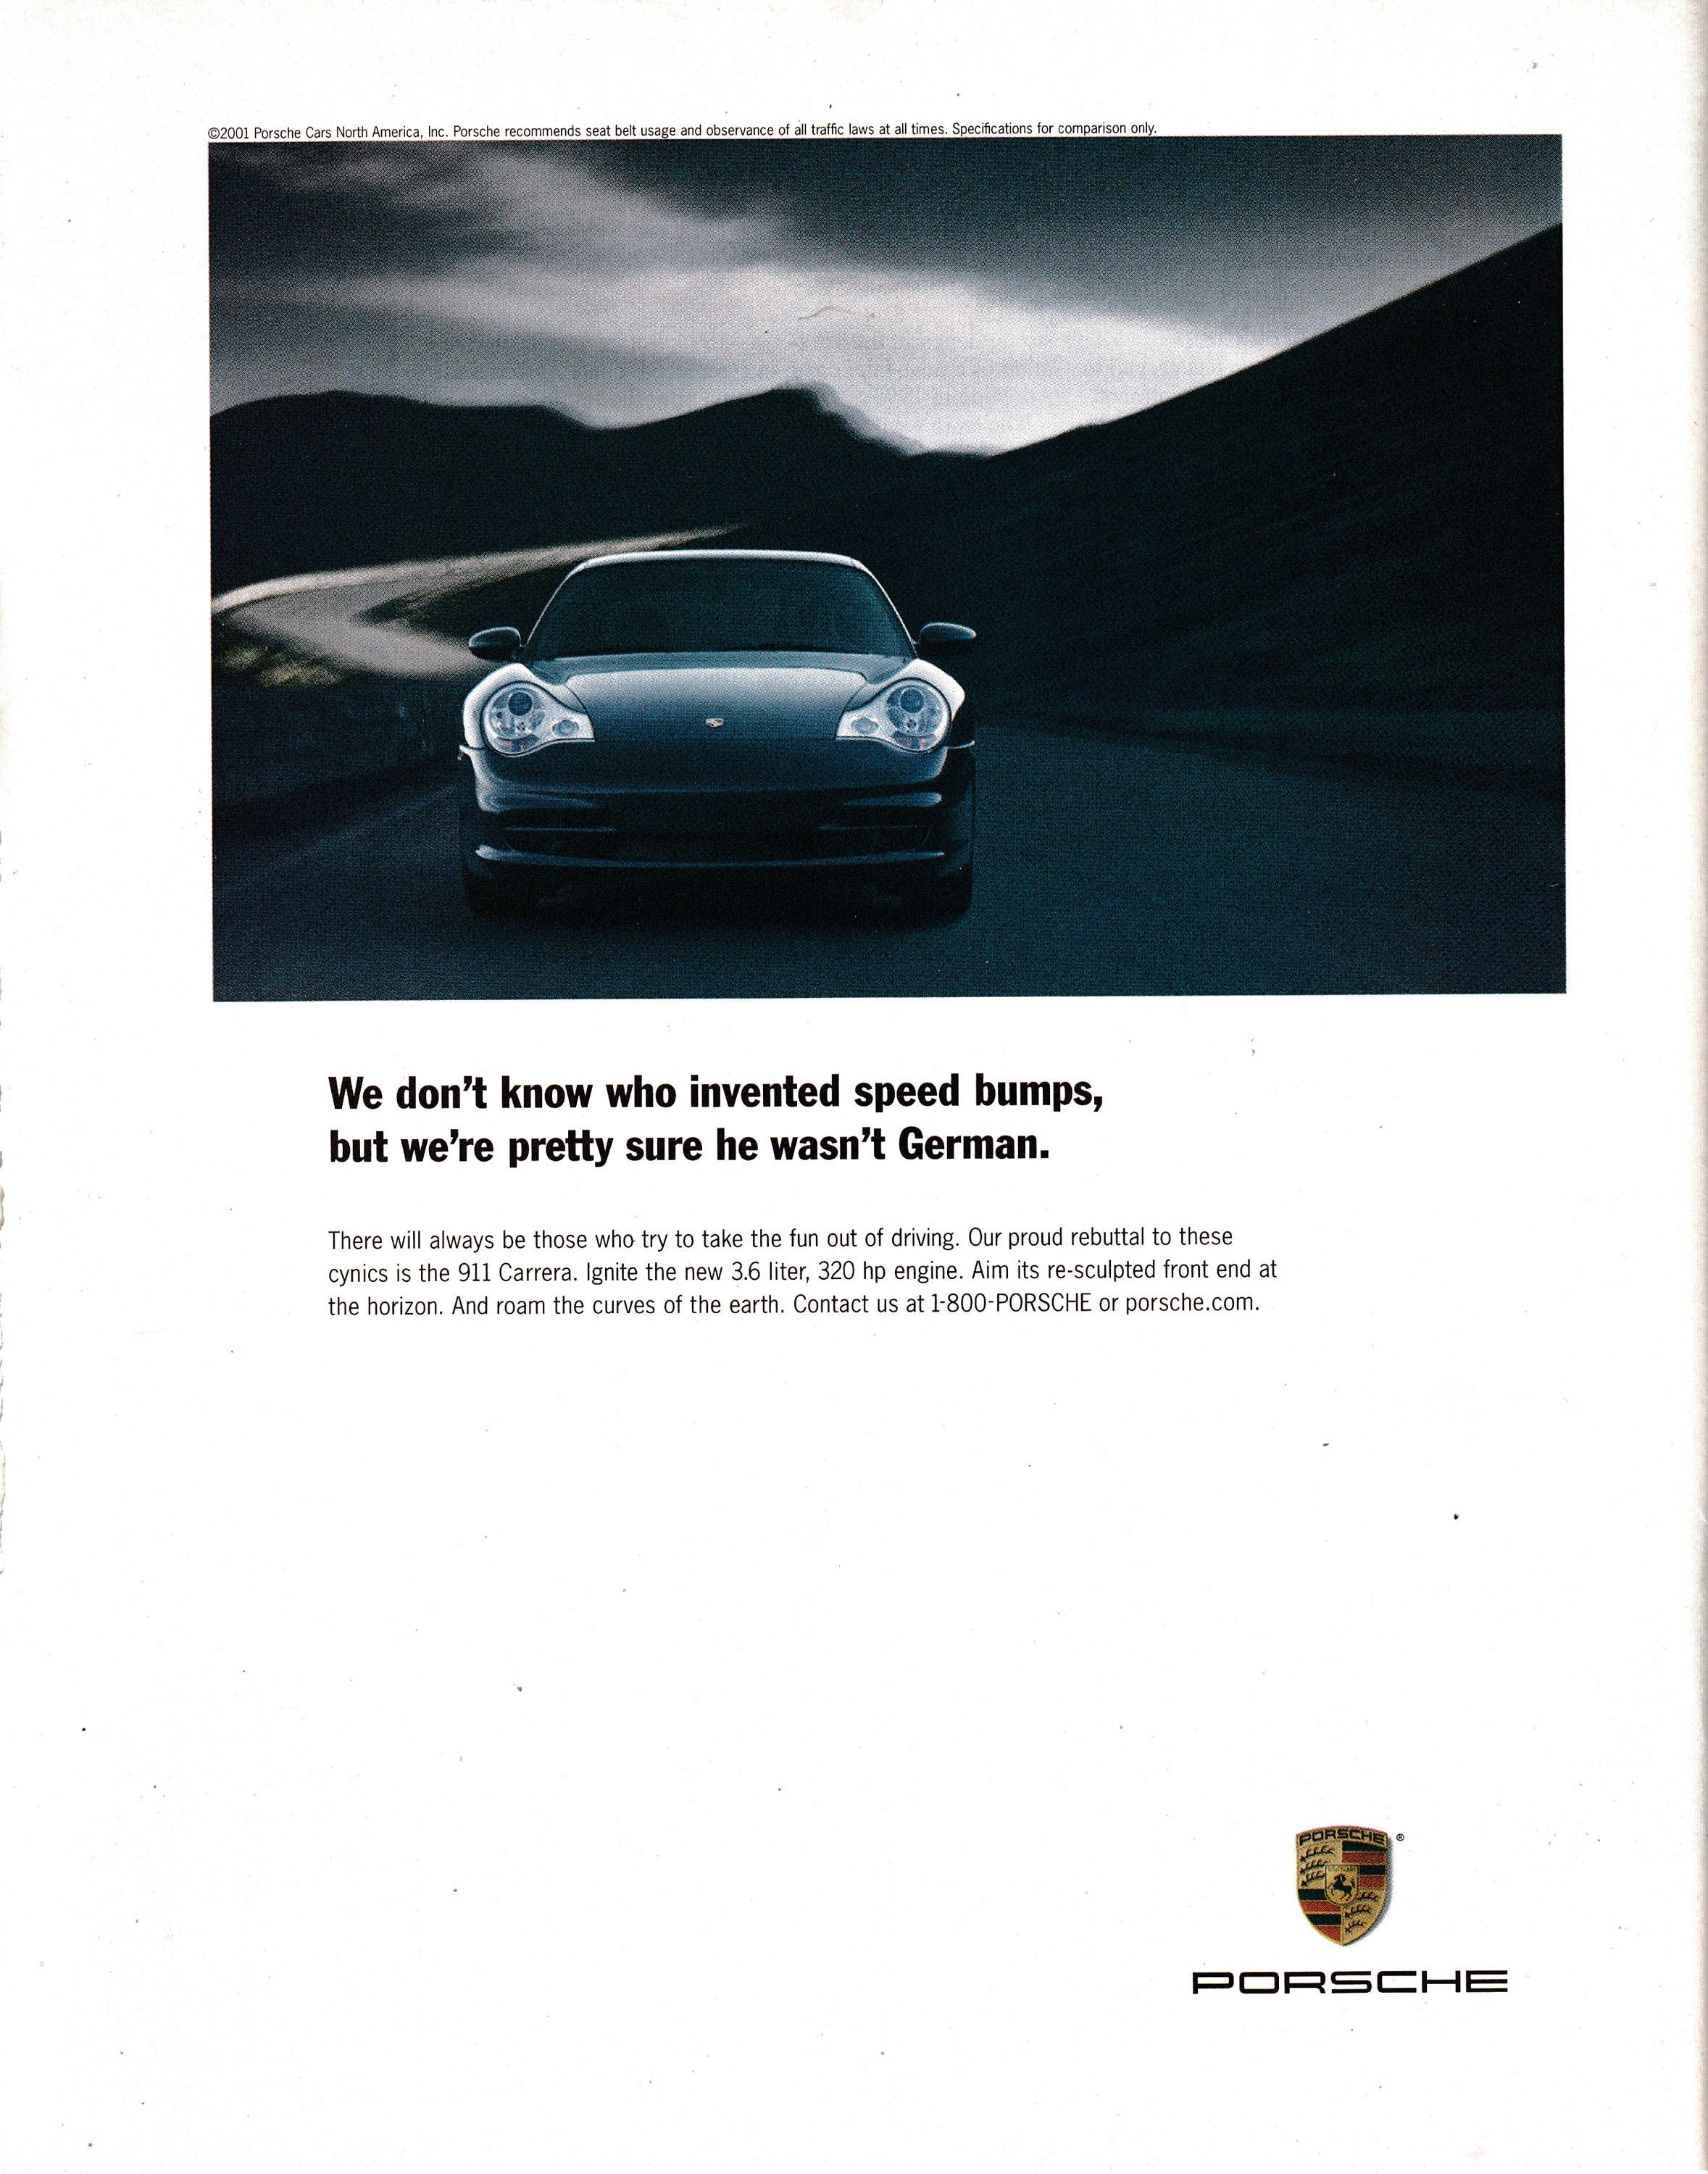 2001 Porsche 911 Carrera  Liter 320 HP Original Magazine Ad - Etsy  Finland